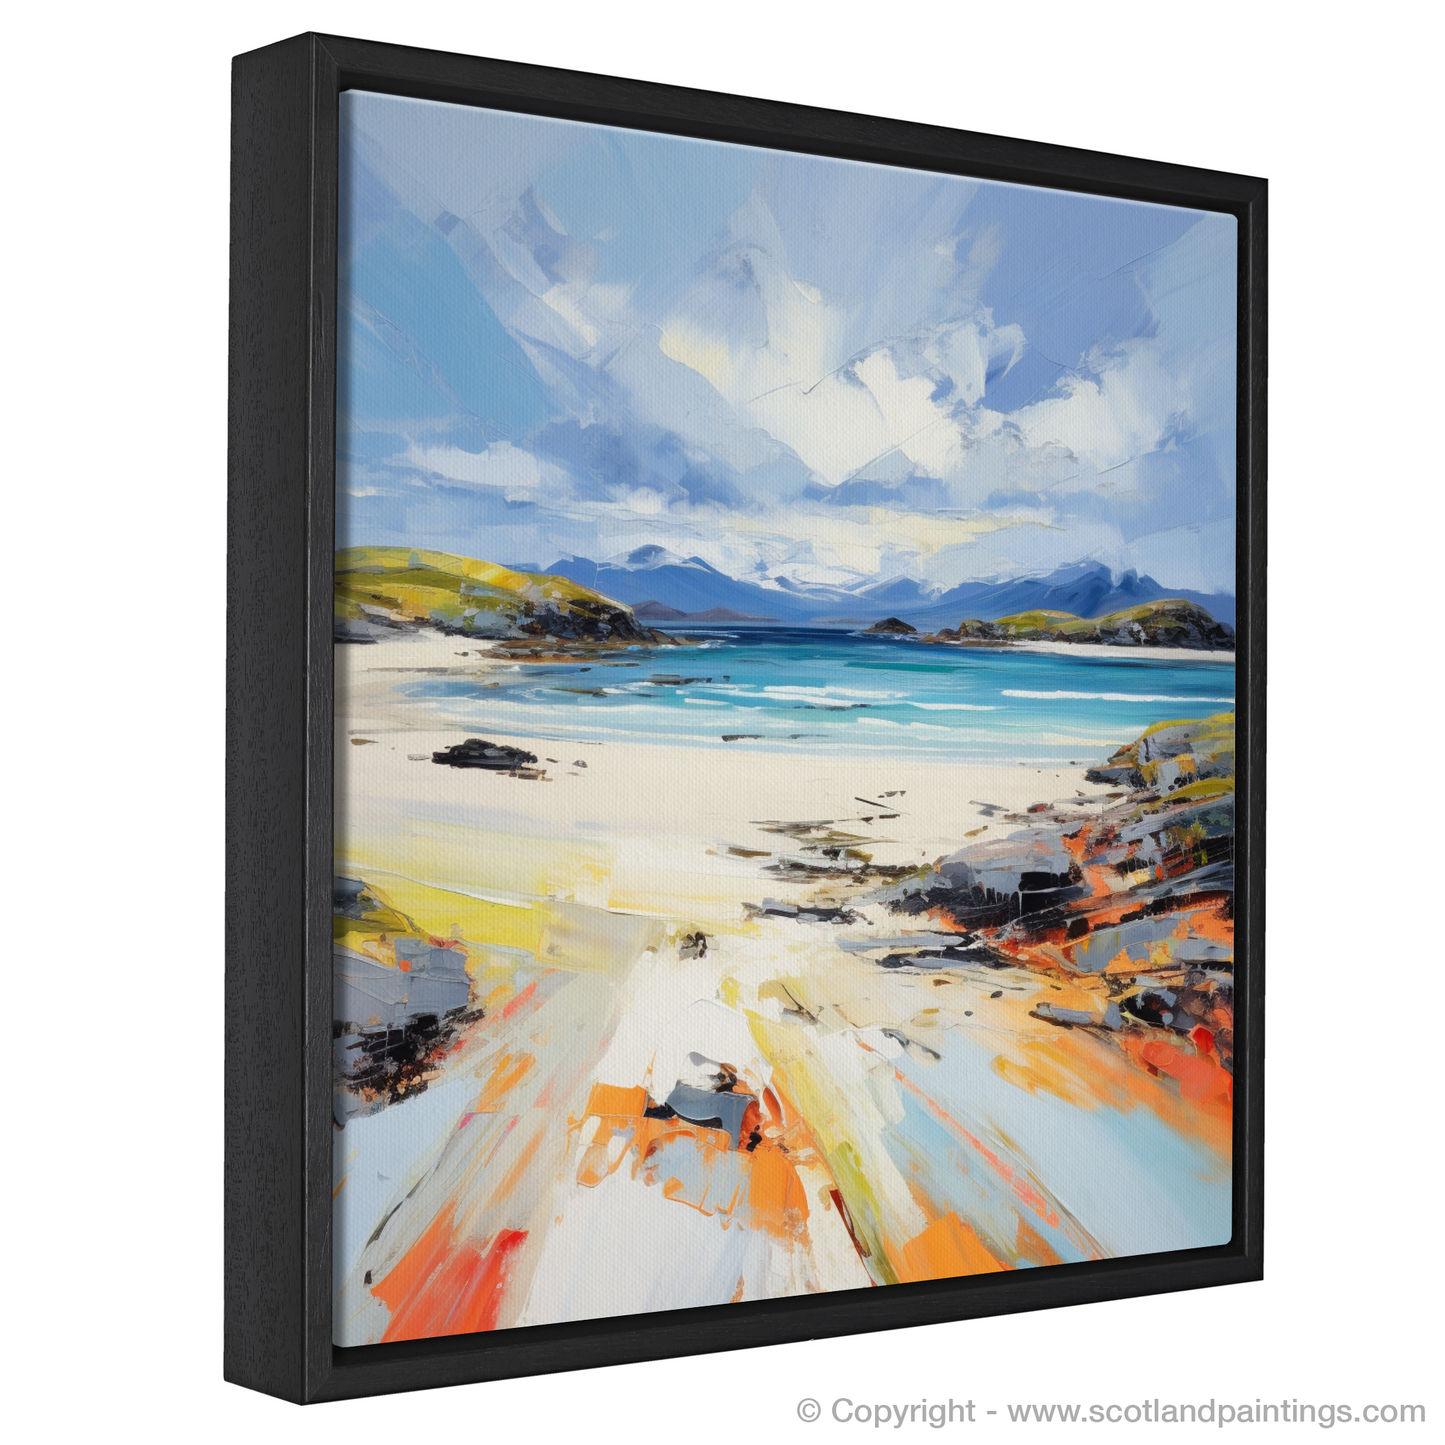 Painting and Art Print of Camusdarach Beach, Arisaig entitled "Expressionist Serenade of Camusdarach Beach, Arisaig".